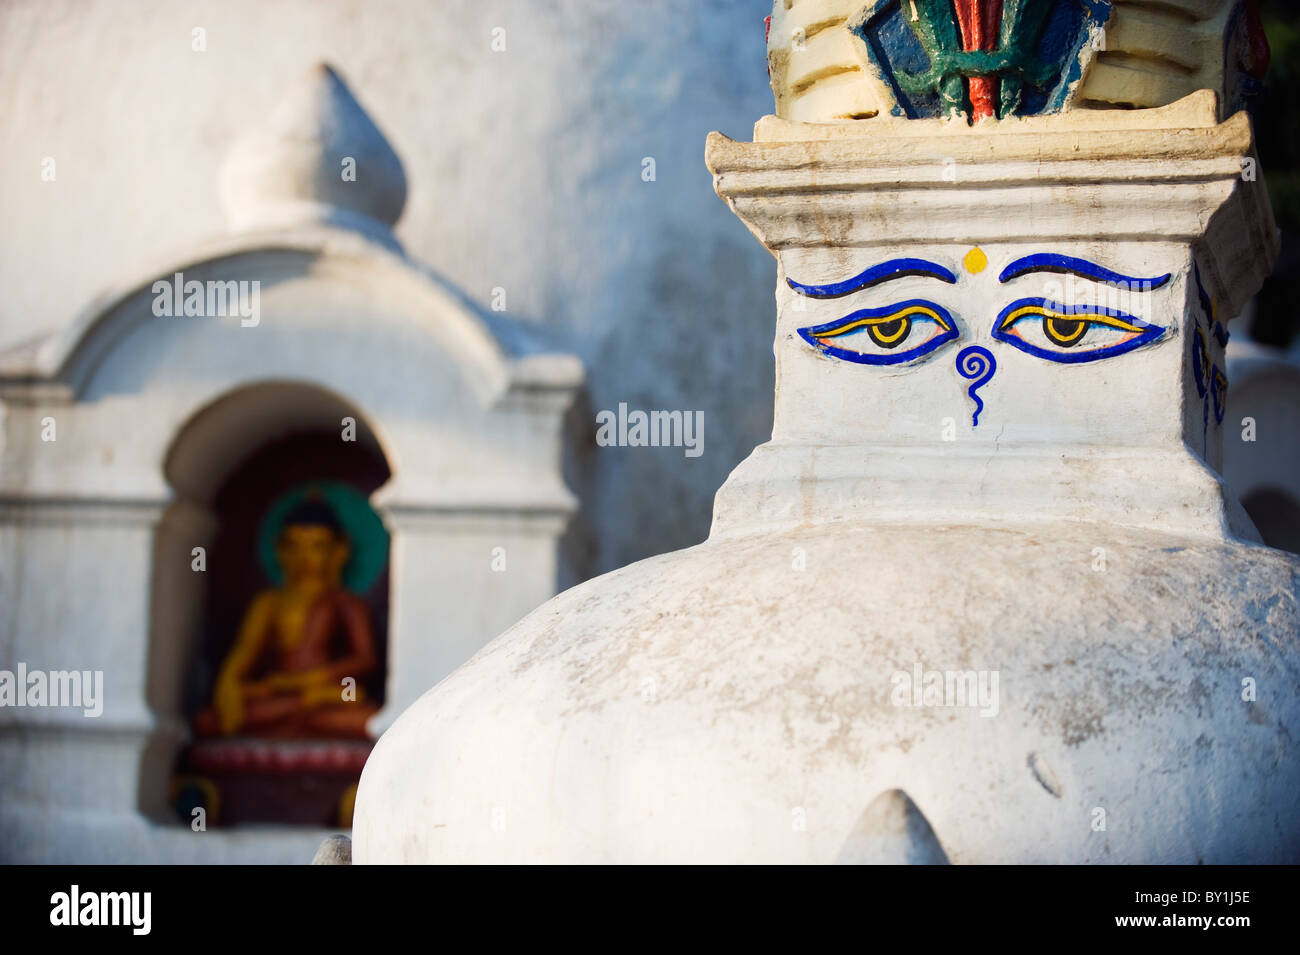 Asia, Nepal, Kathmandu, Valle di Kathmandu, Swayambhu, Monkey Temple, stupa occhi di Buddha Foto Stock